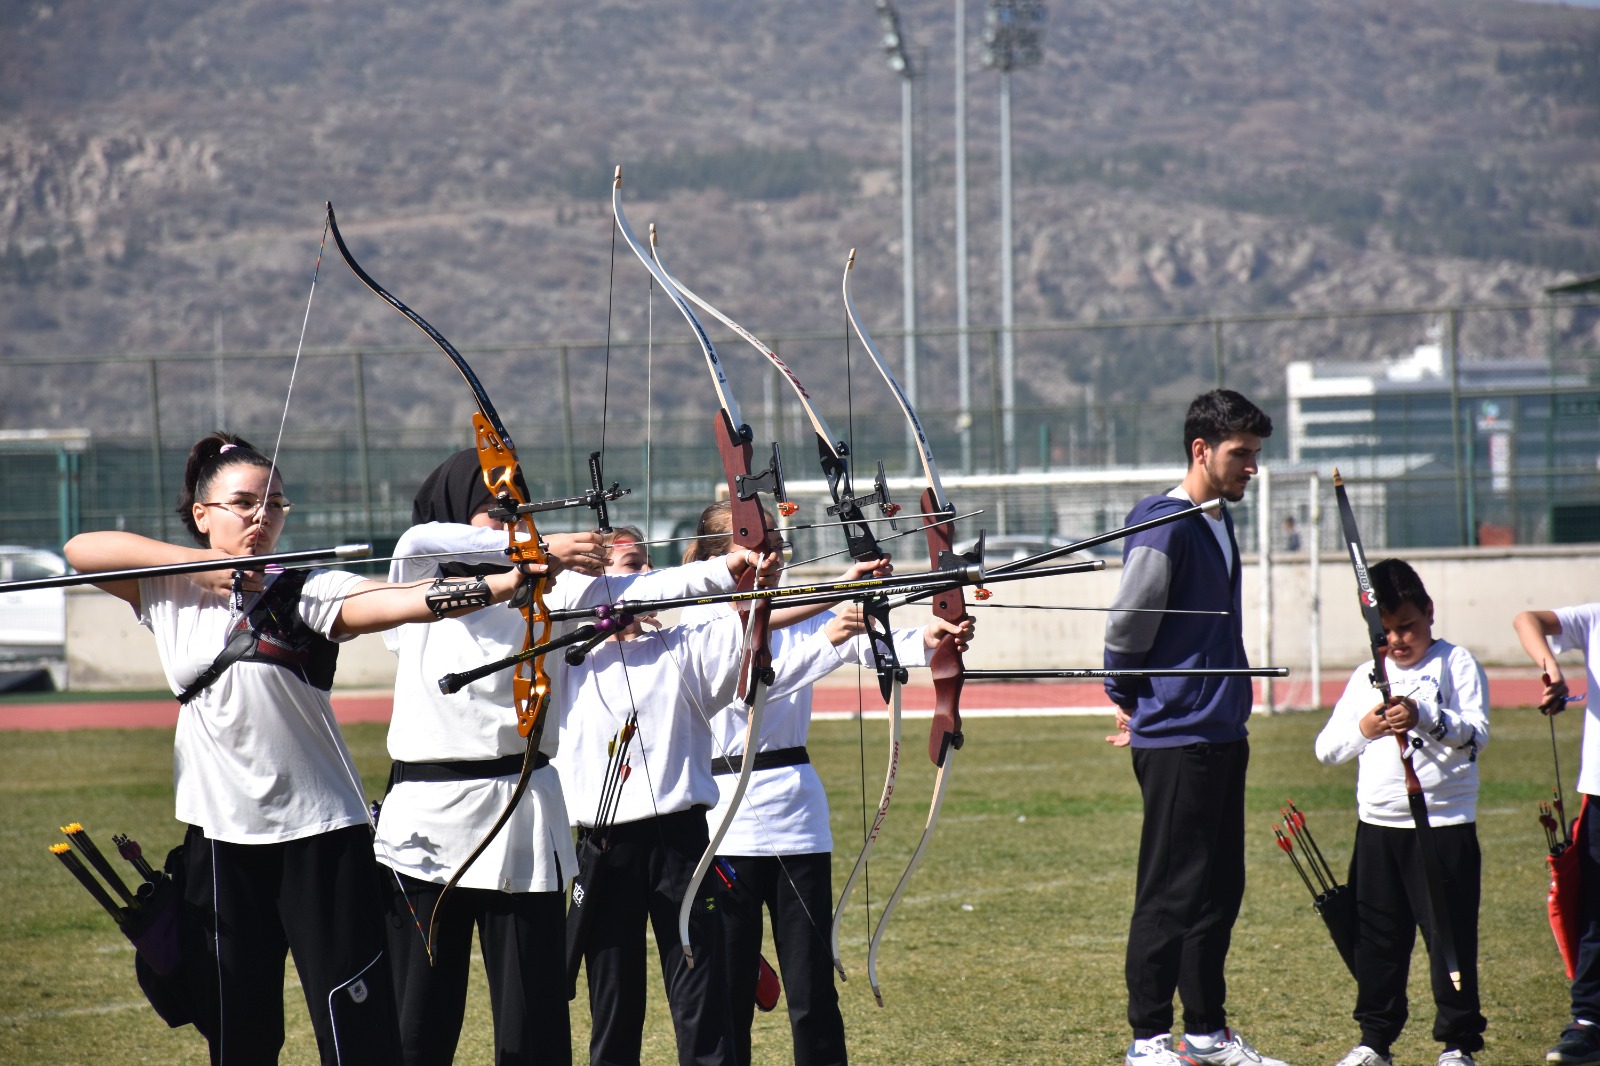 Geleneksel Türk Okçuluğu Müsabakaları, 102 sporcunun katılımıyla başladı